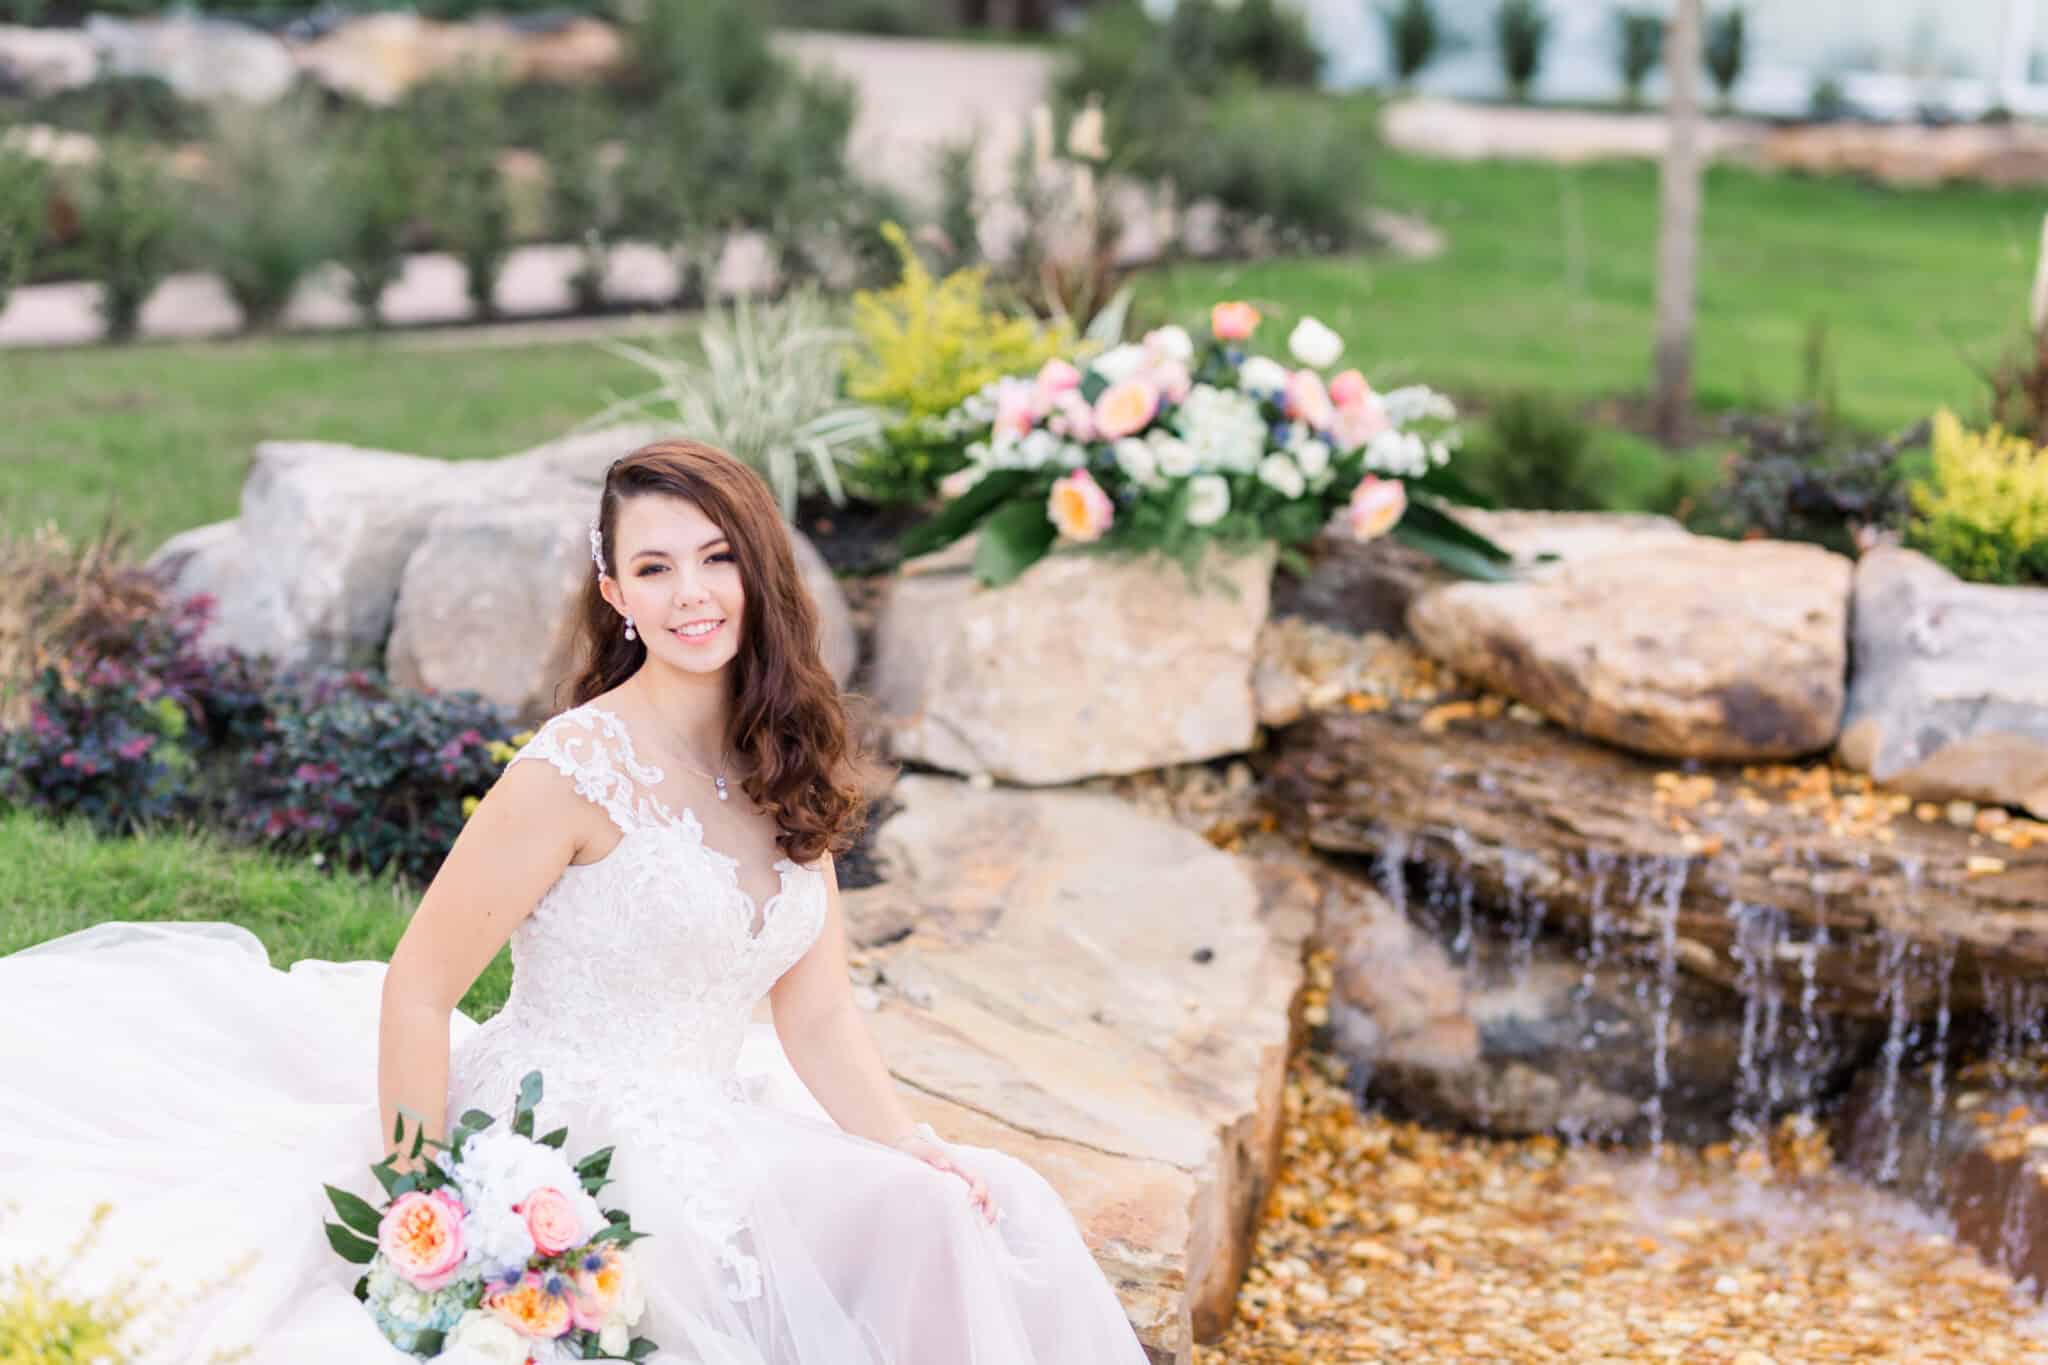 bride sits on rocks near waterfall landscape in wedding dress with flower bouquet